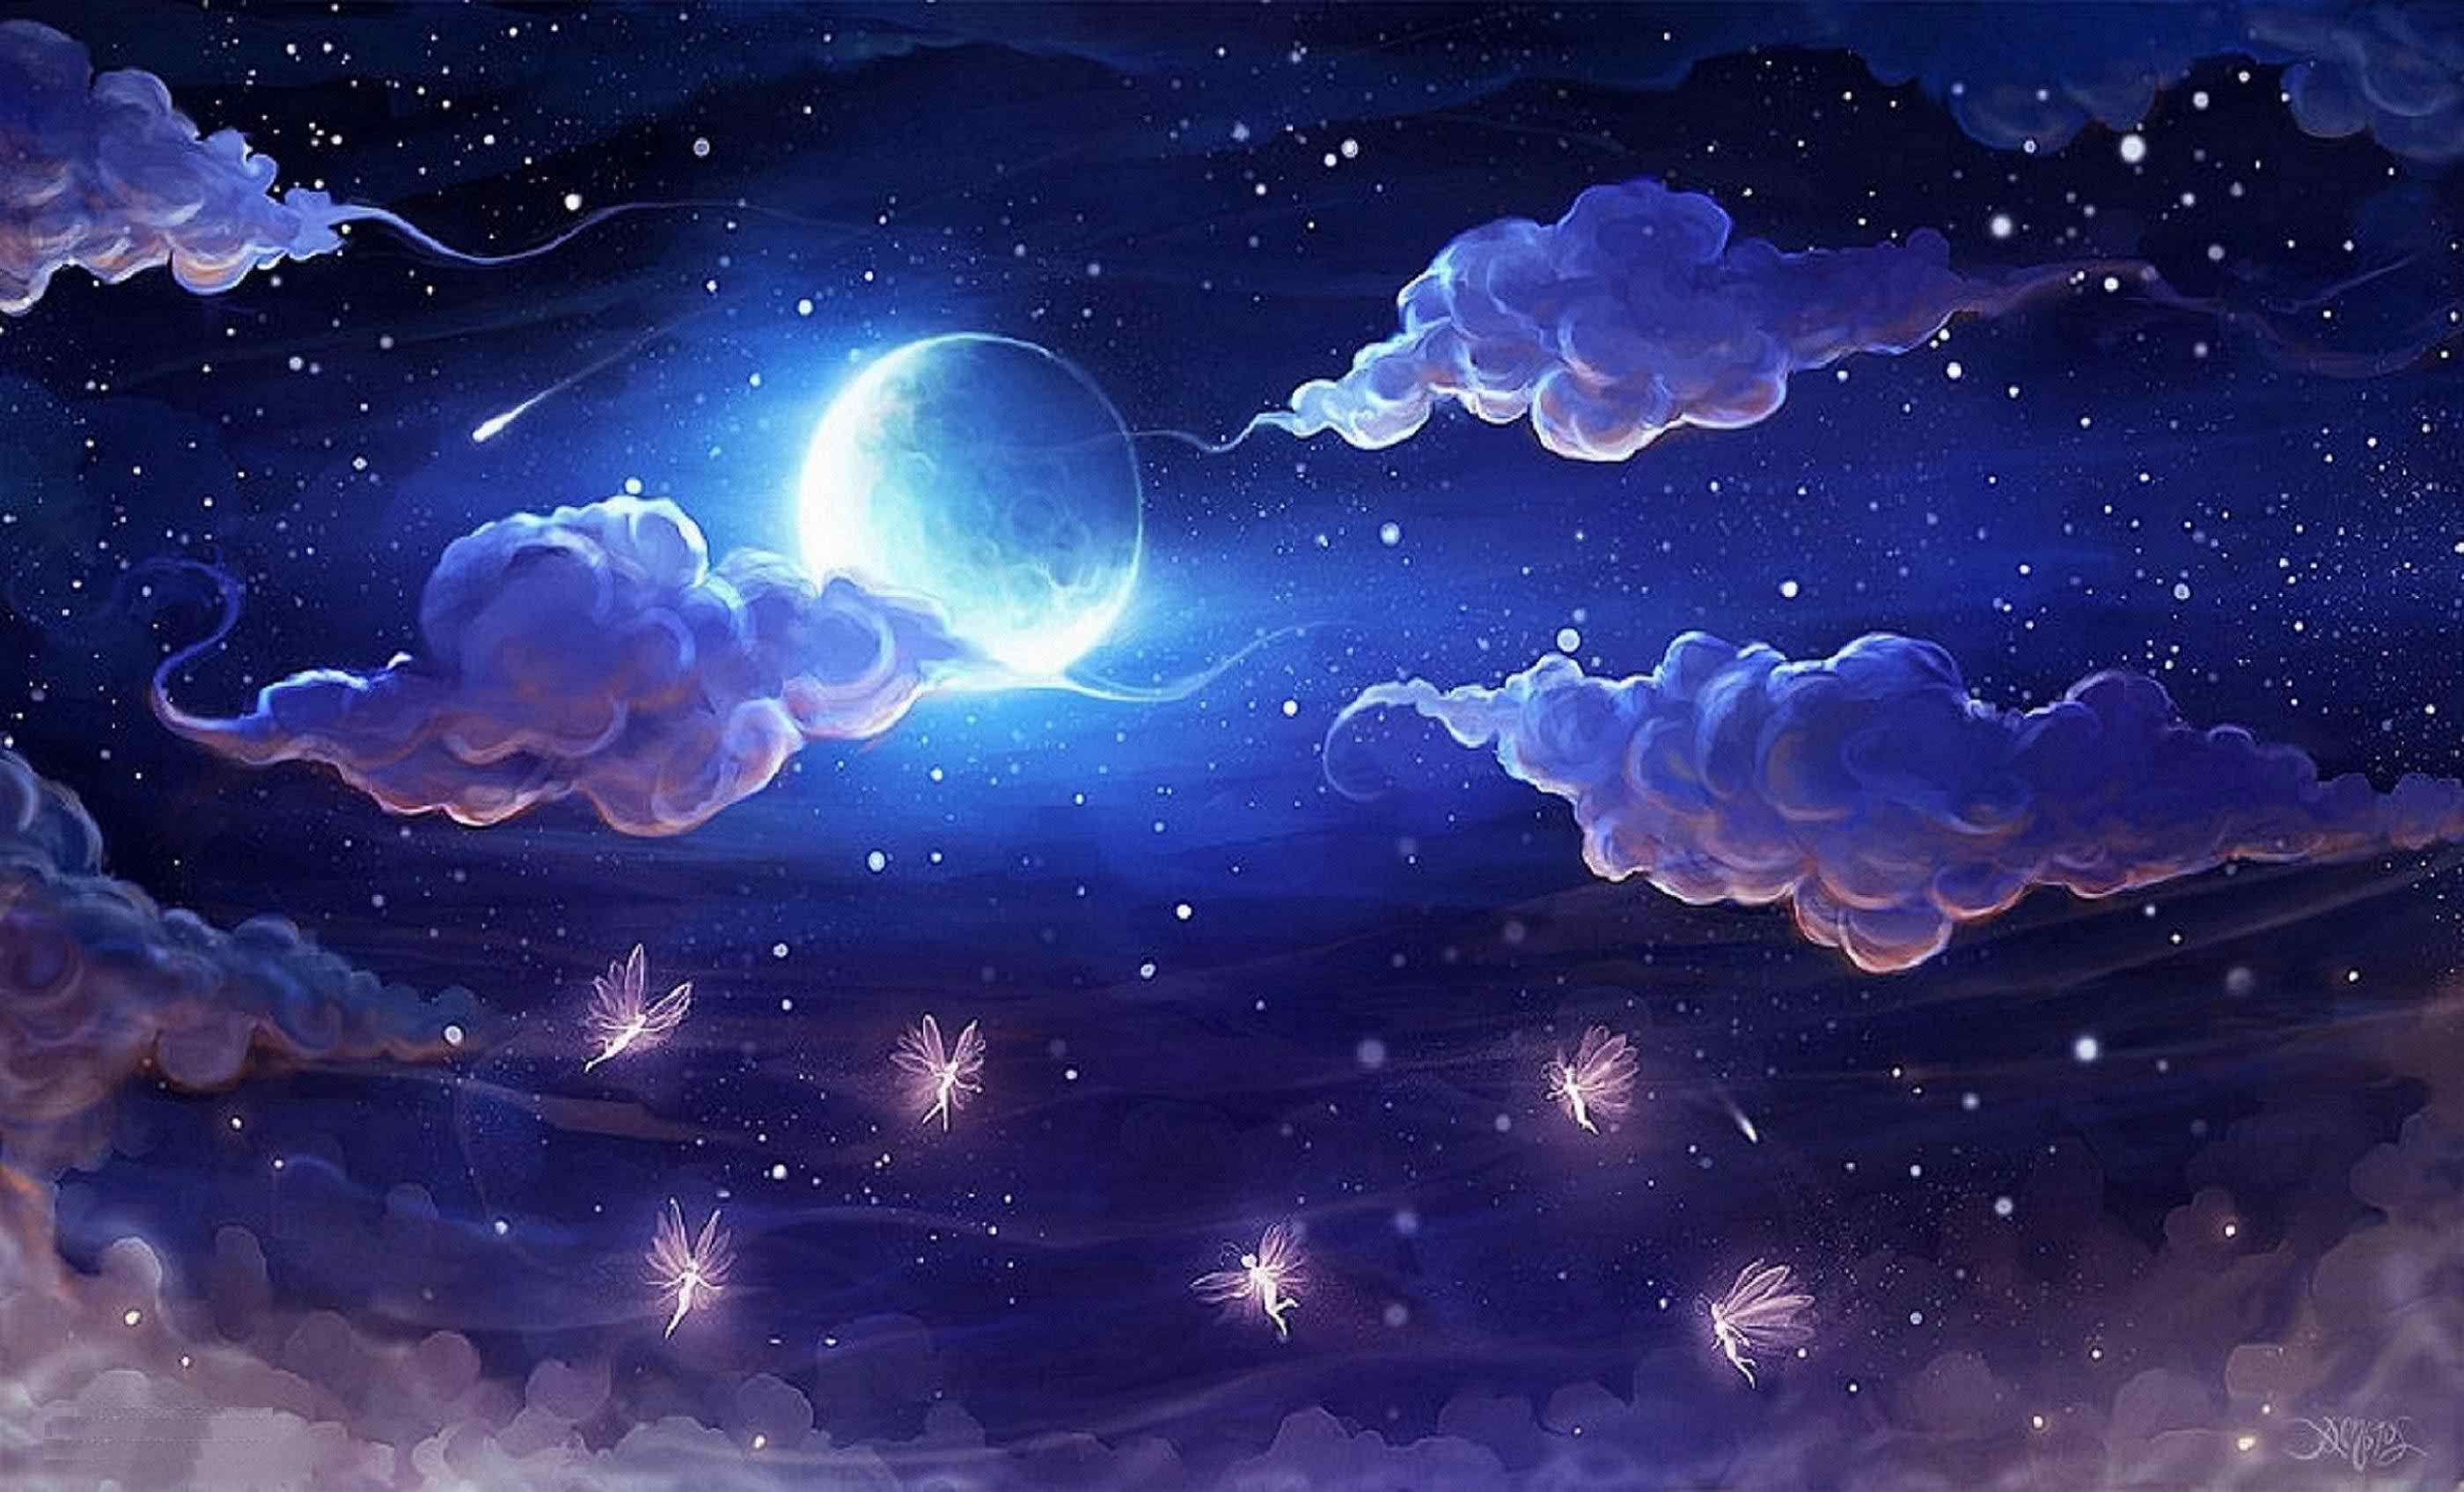 Twilight Moon Wallpaper 4K, Valley, Mountain range, Night sky